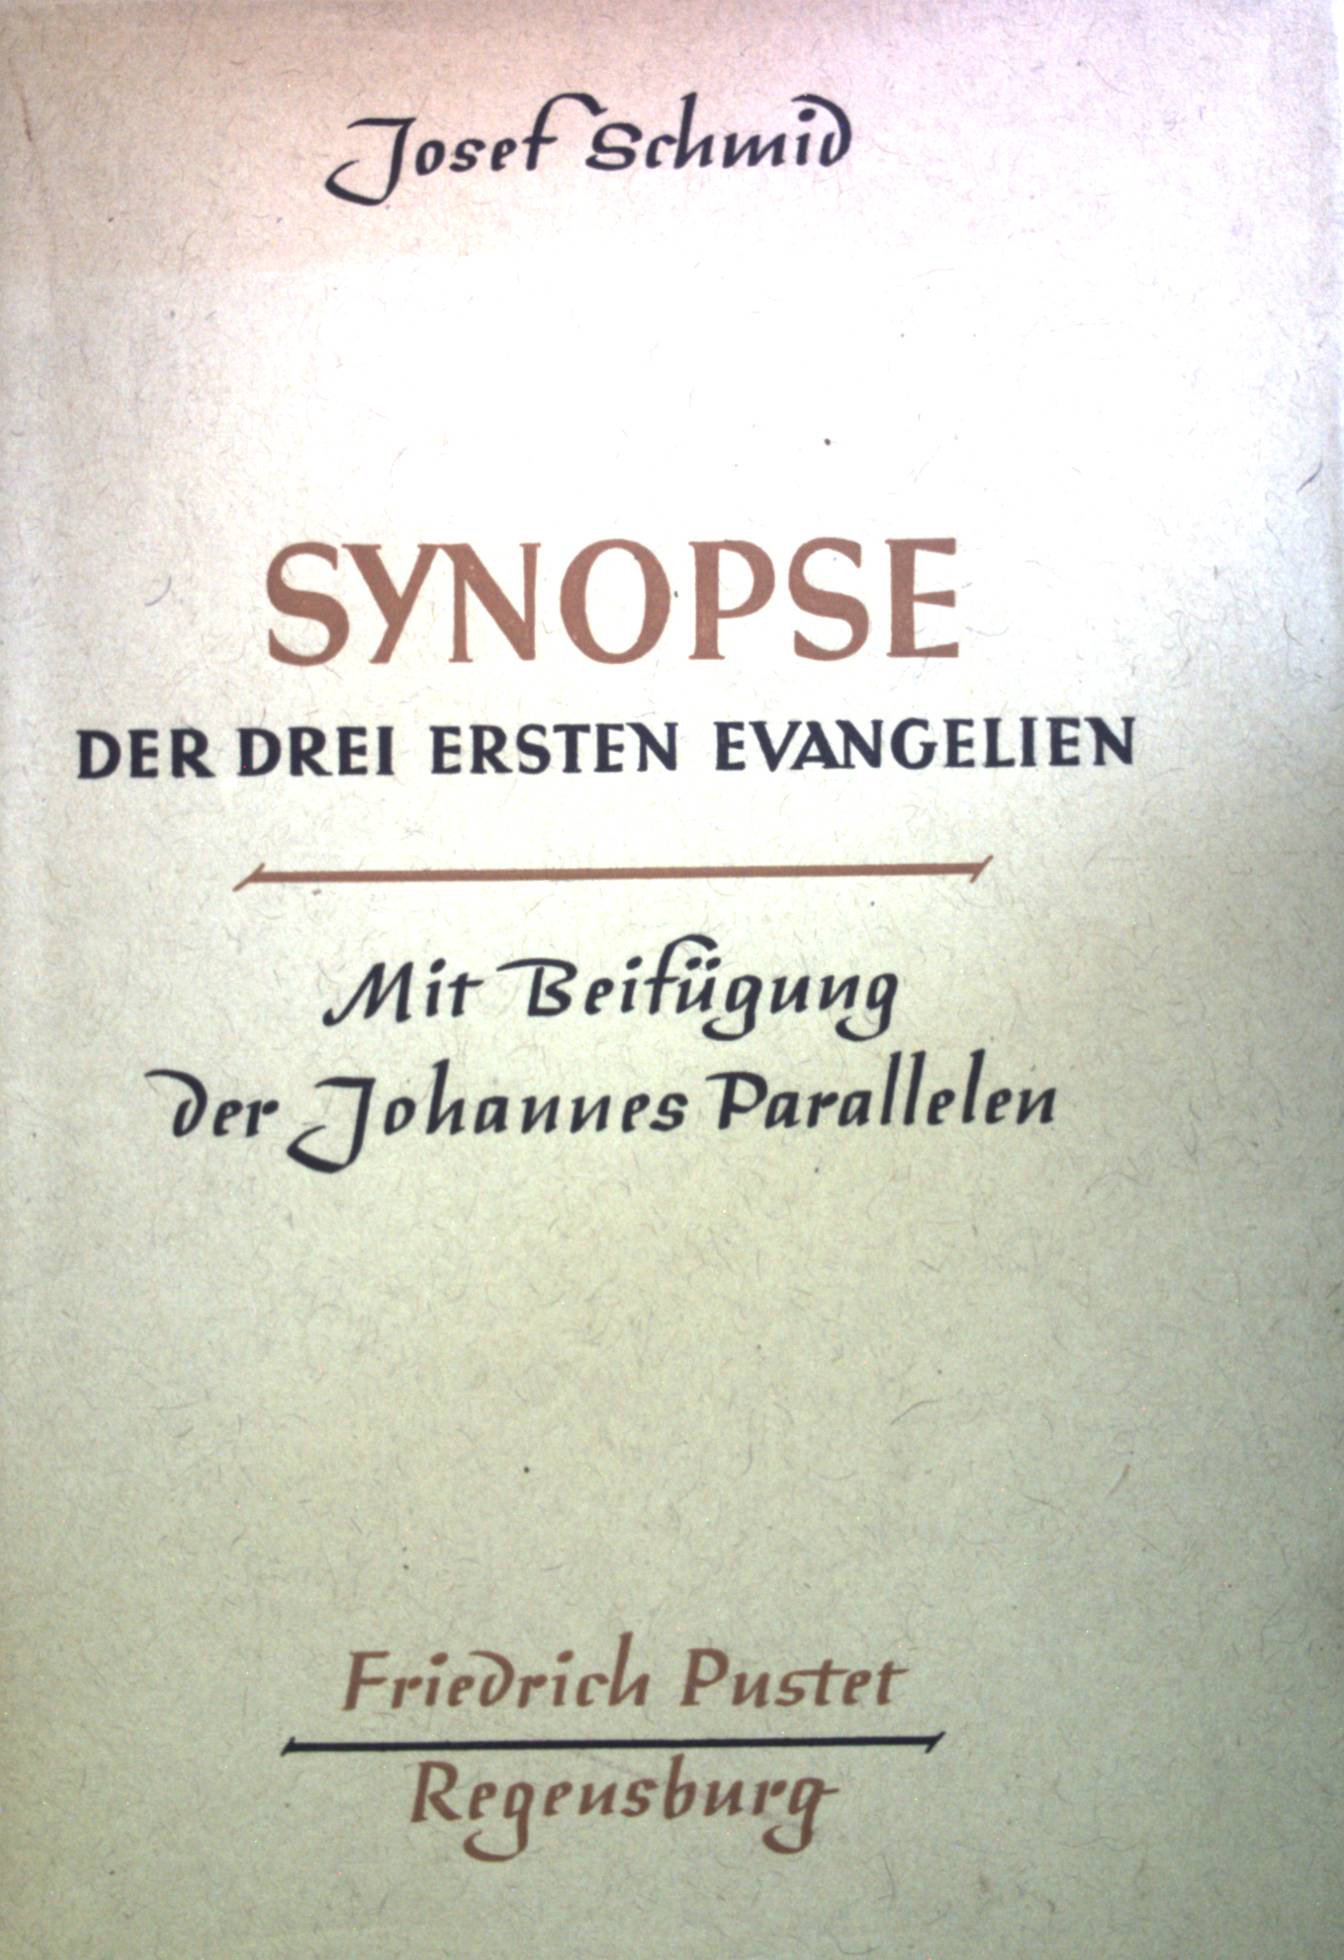 Synopse der drei ersten Evangelien: mit BeifÃ¼gung der Johannes-Parallelen. - Schmid, Josef